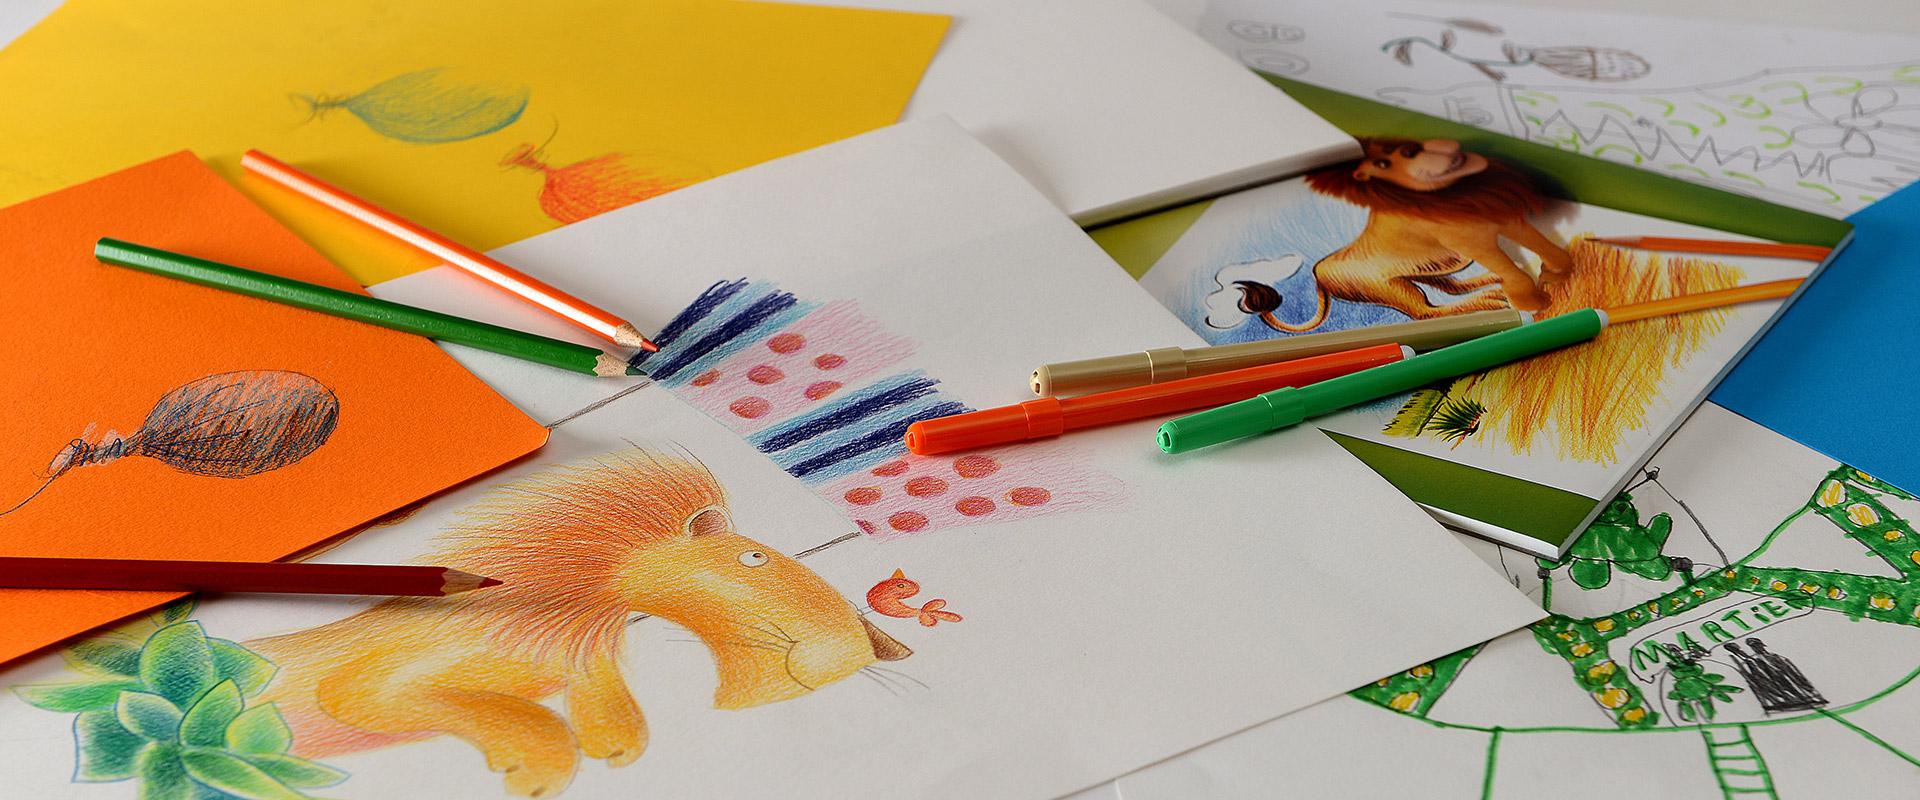 Learn Drawing For Kids | Learn Drawing For Kids | By DIY PencilsFacebook